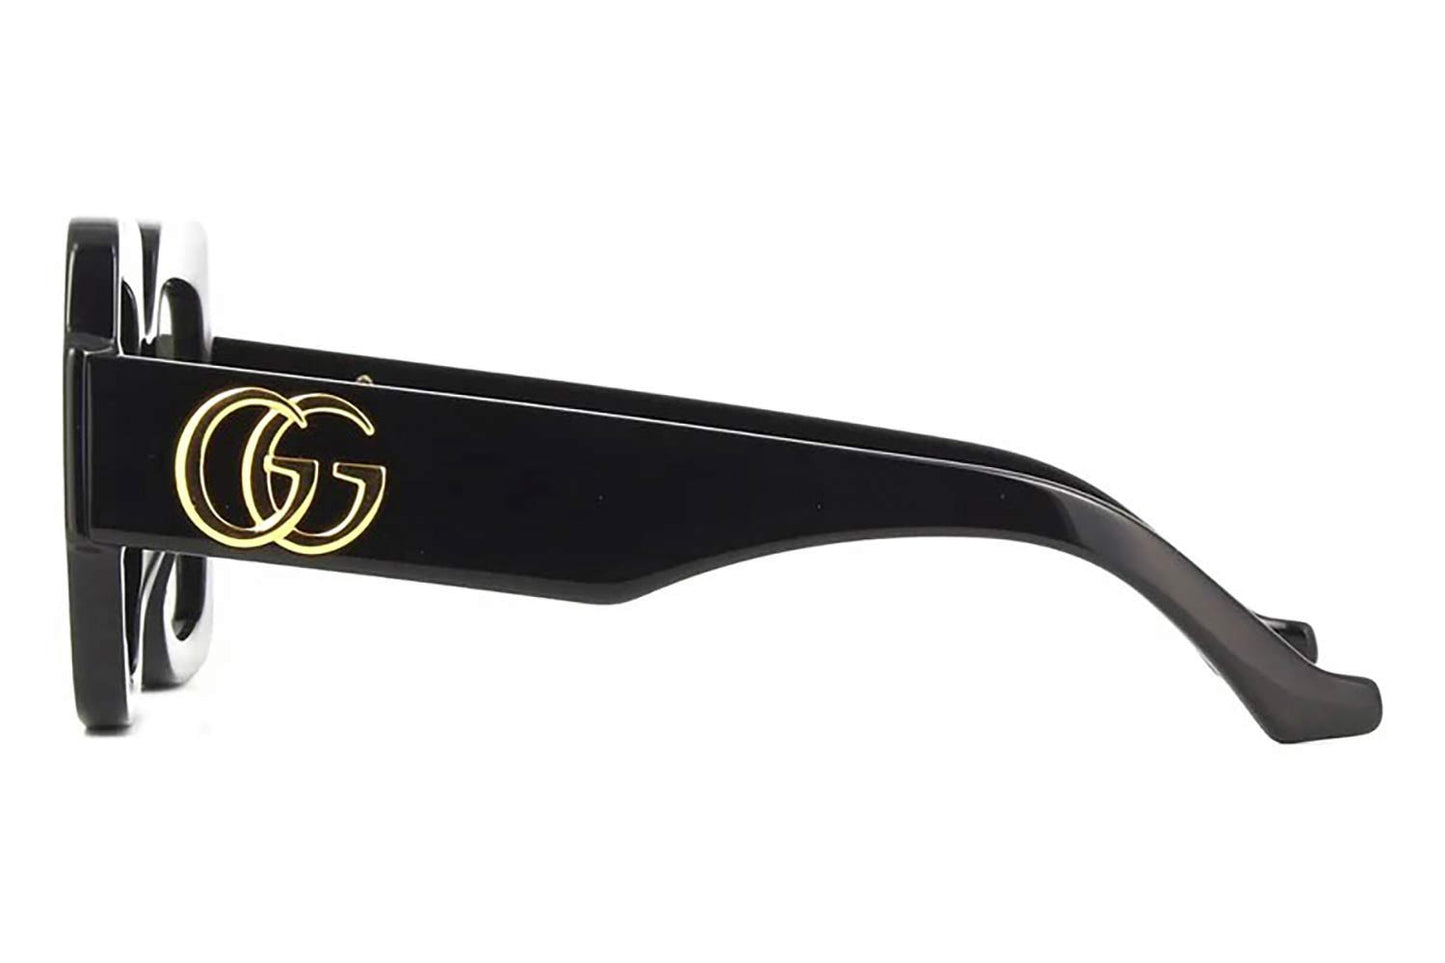 Gucci GG1547S-001 50mm New Sunglasses